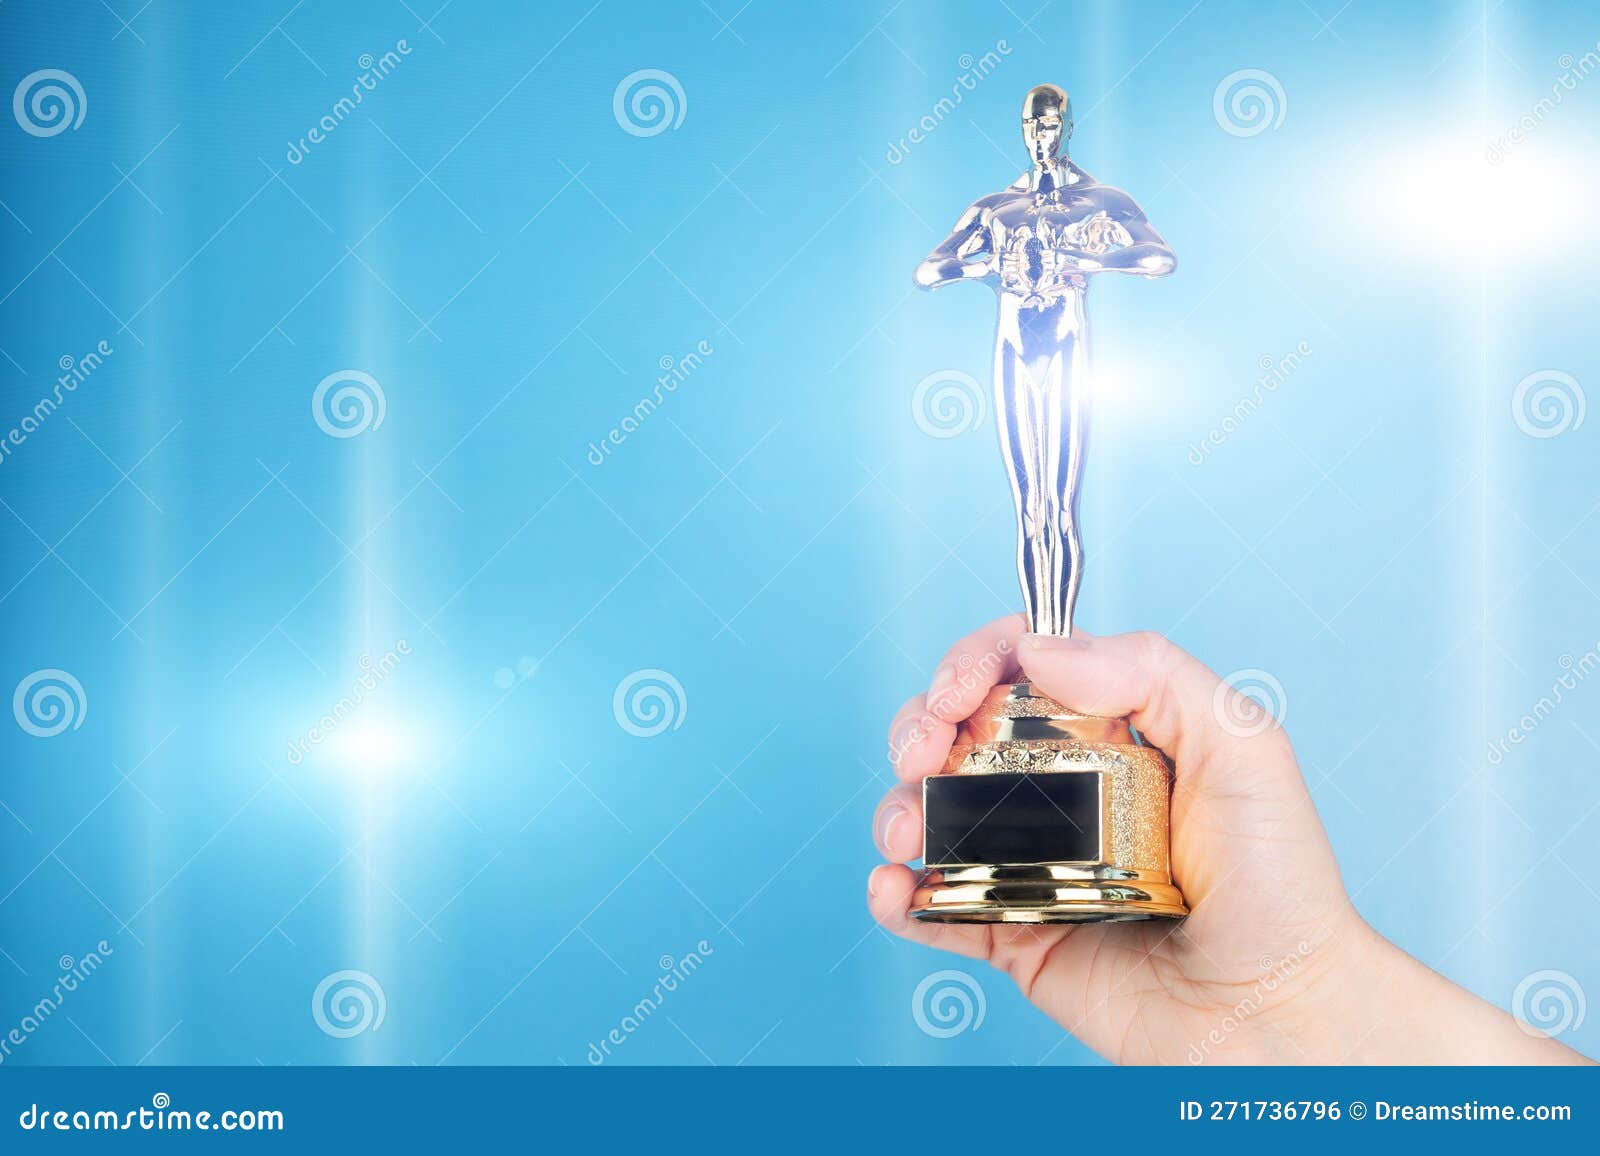 Estatua De Trofeo De Premio Oscar En Mano En El Espacio De Copia De Fondo  Azul Foto editorial - Imagen de dorado, academia: 271736796